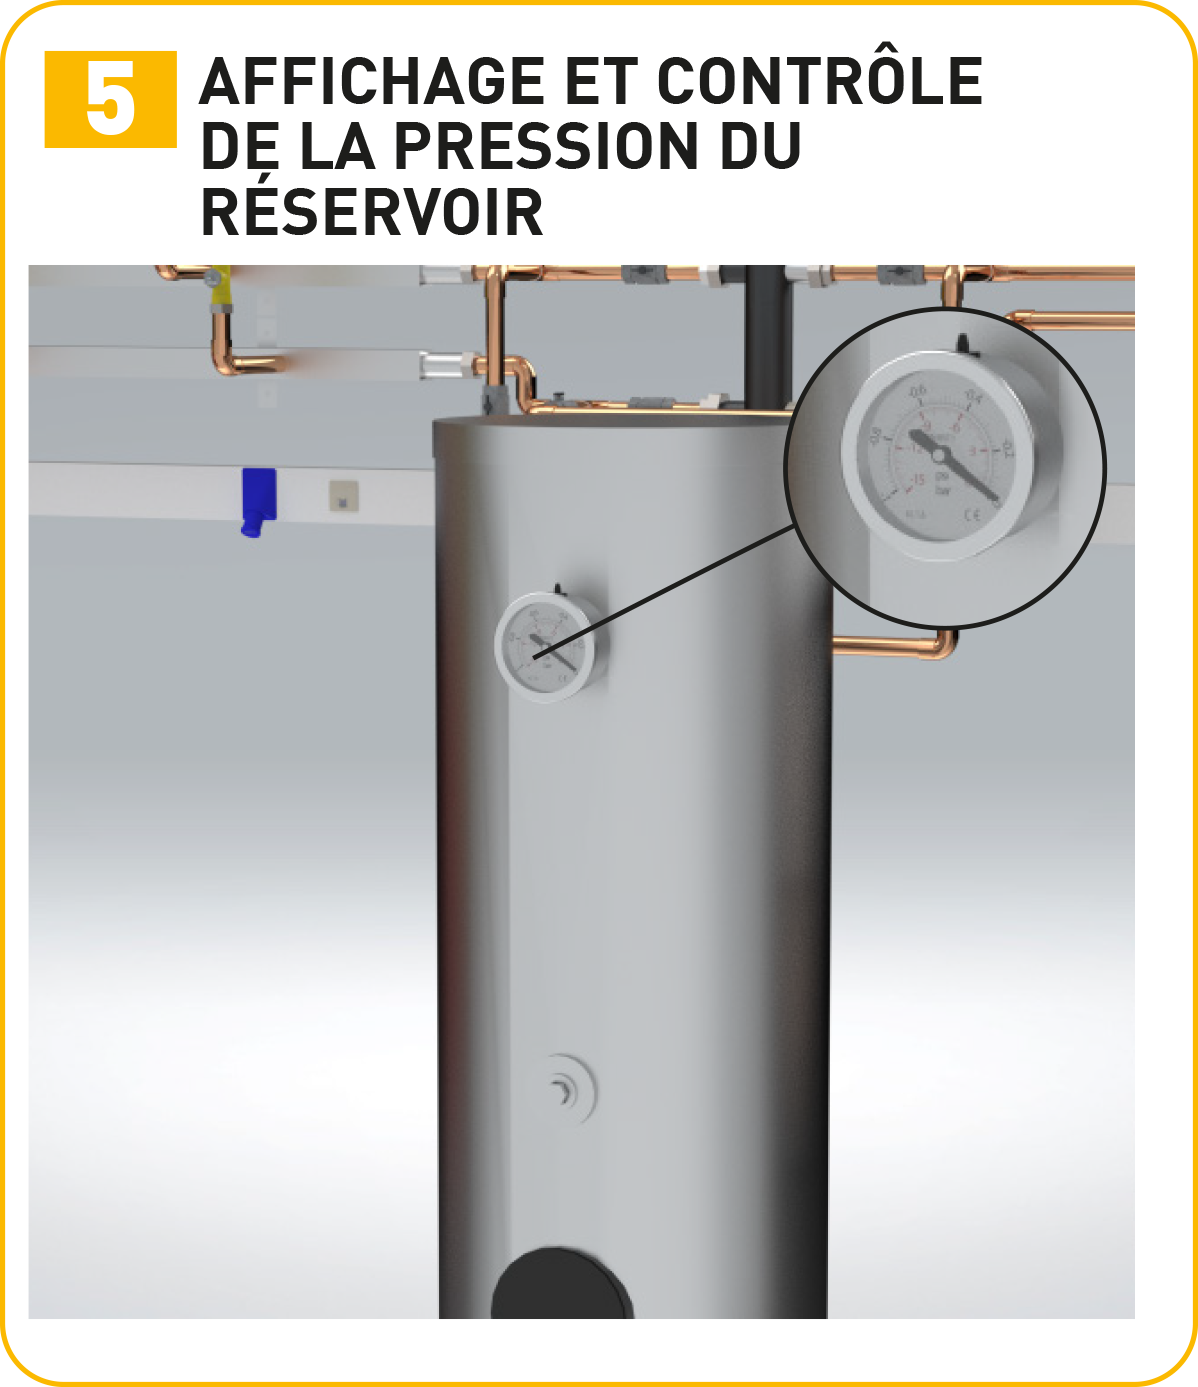 Affichage et contrôle de la pression du réservoir 